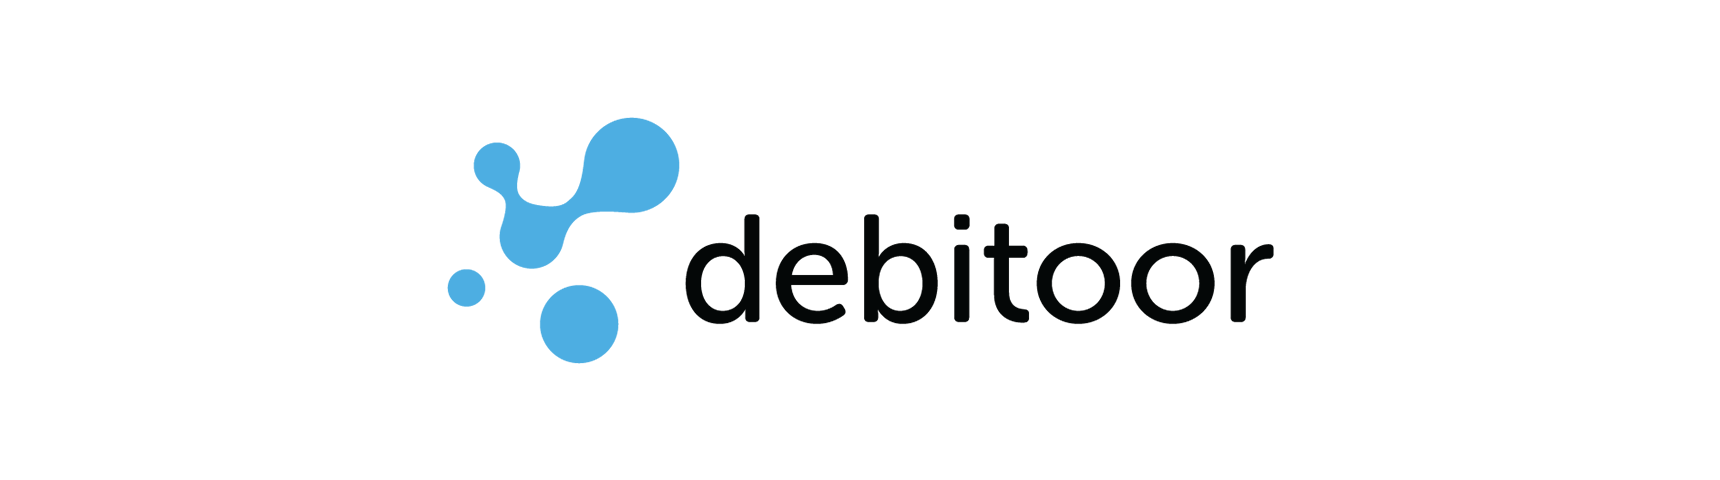 Rechnungsprogramm: Debitoor-Logo 2014